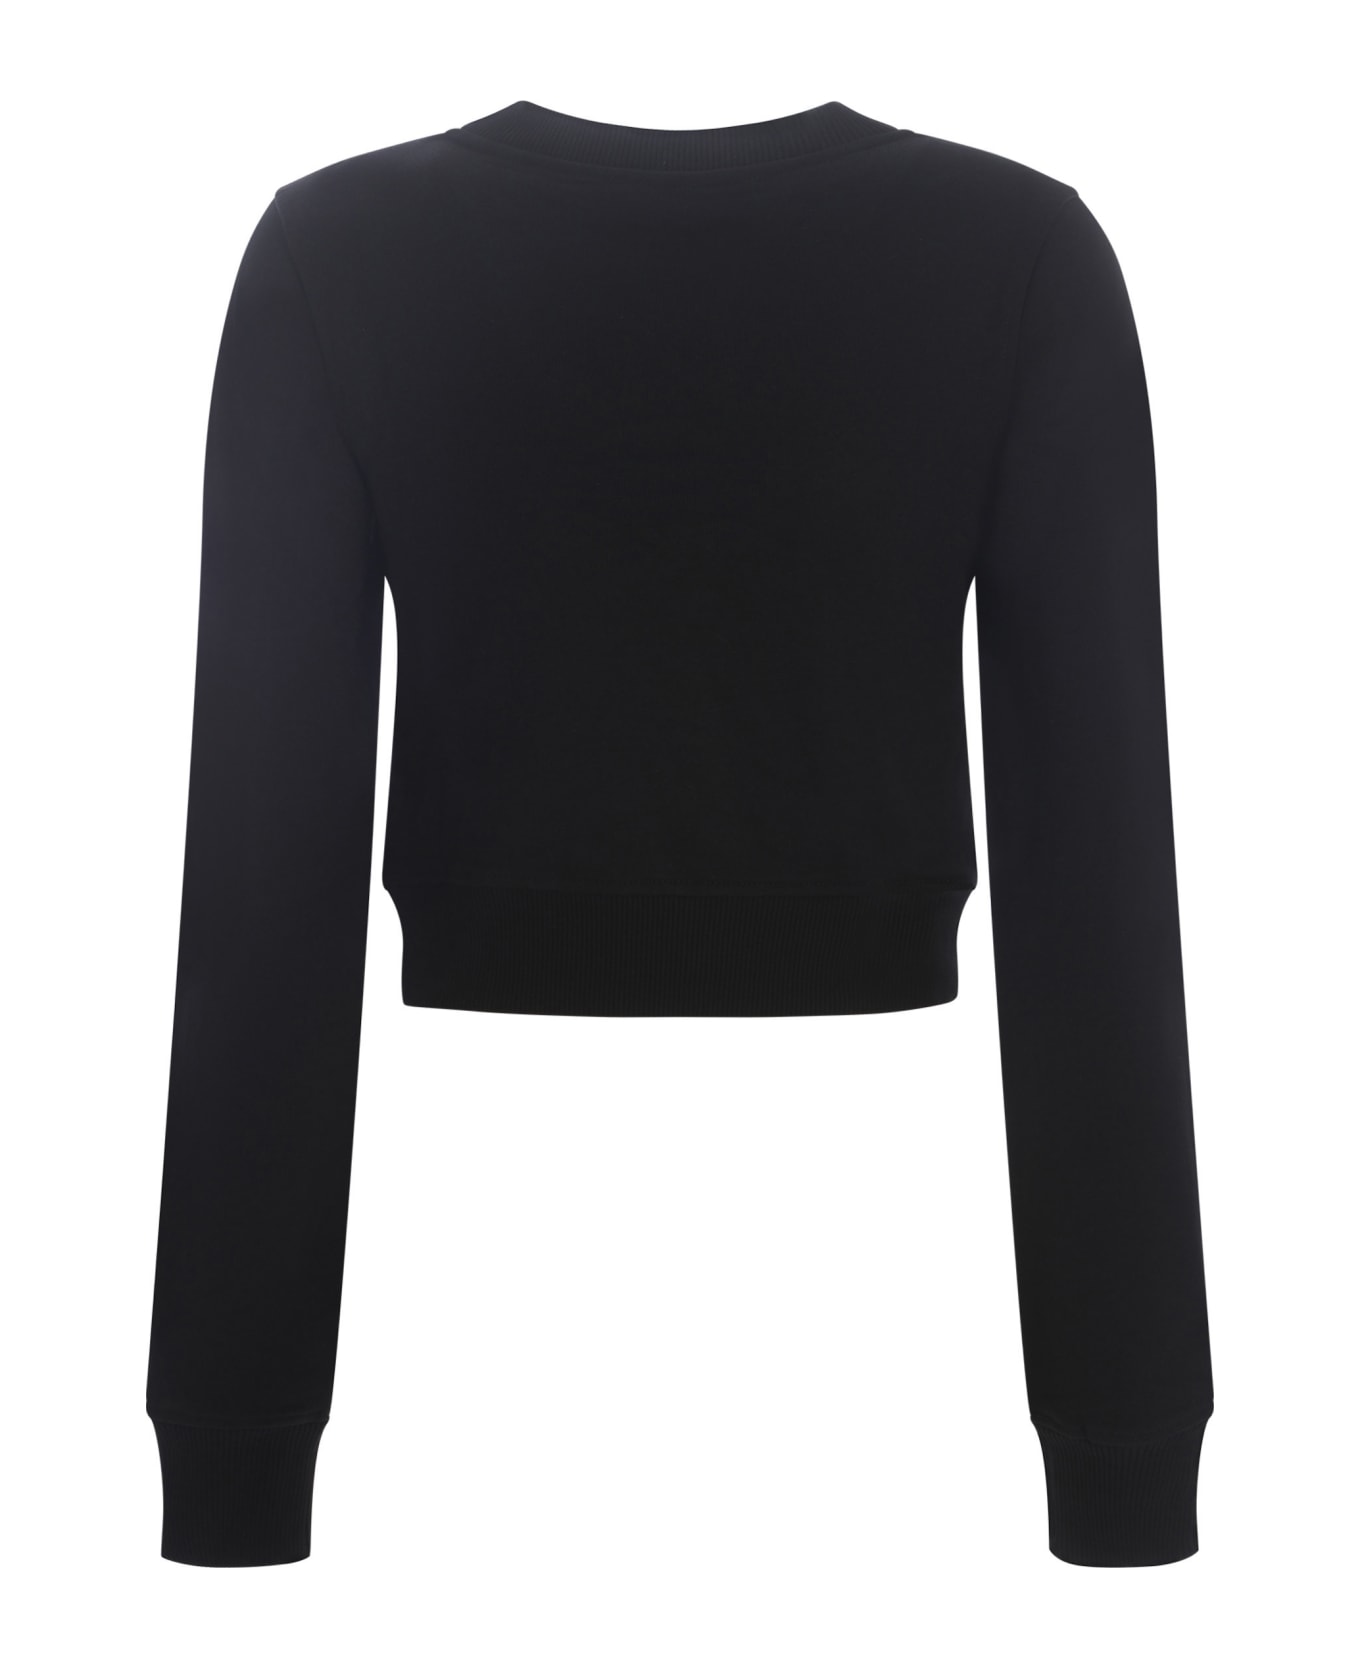 Diesel F-slimmy Cropped Sweatshirt - Black